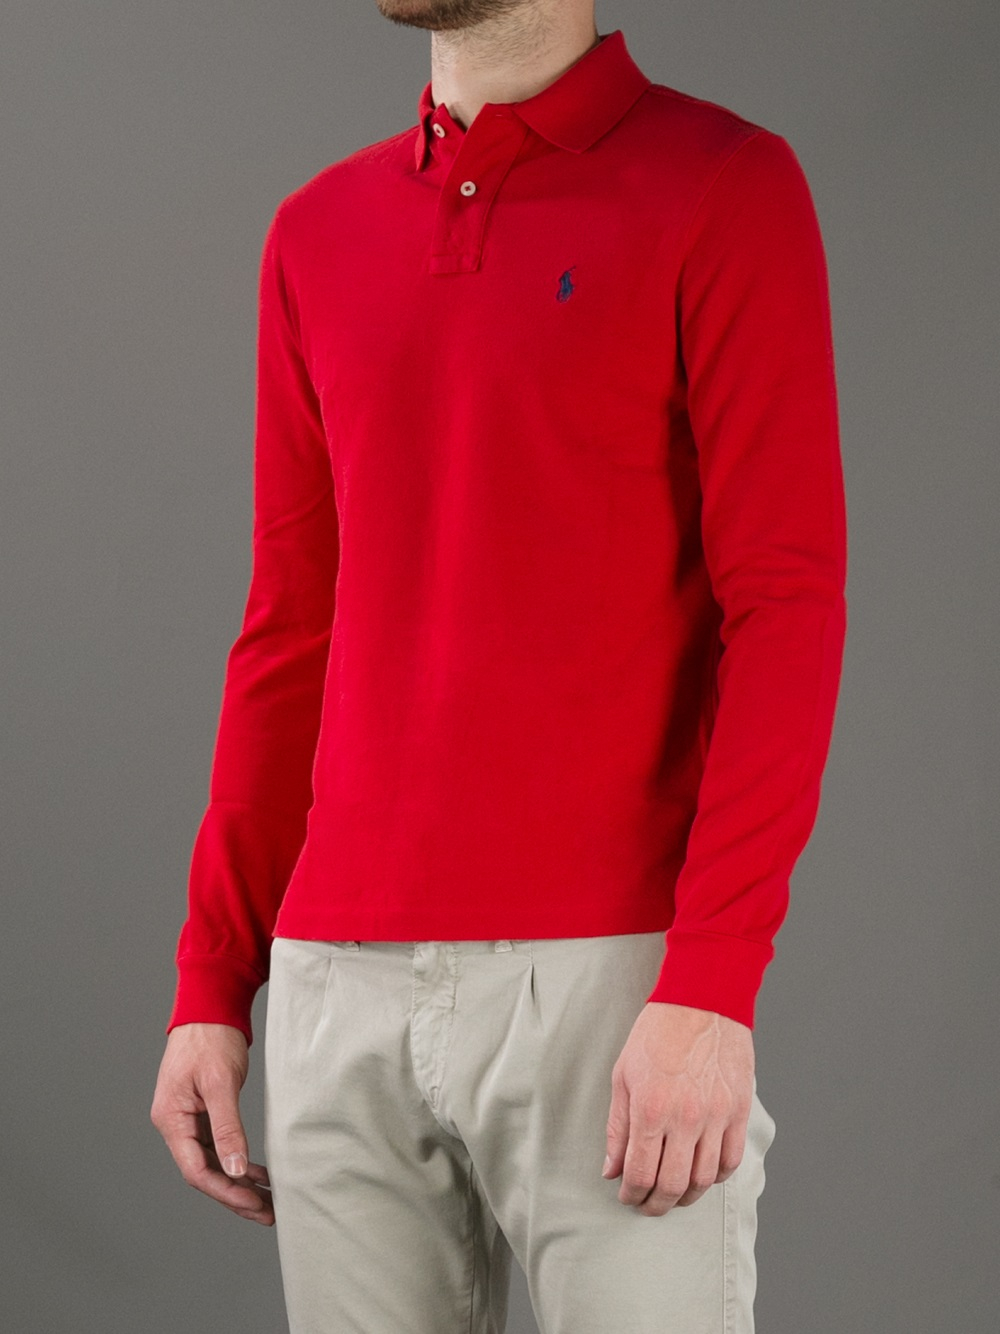 ralph lauren red long sleeve shirt